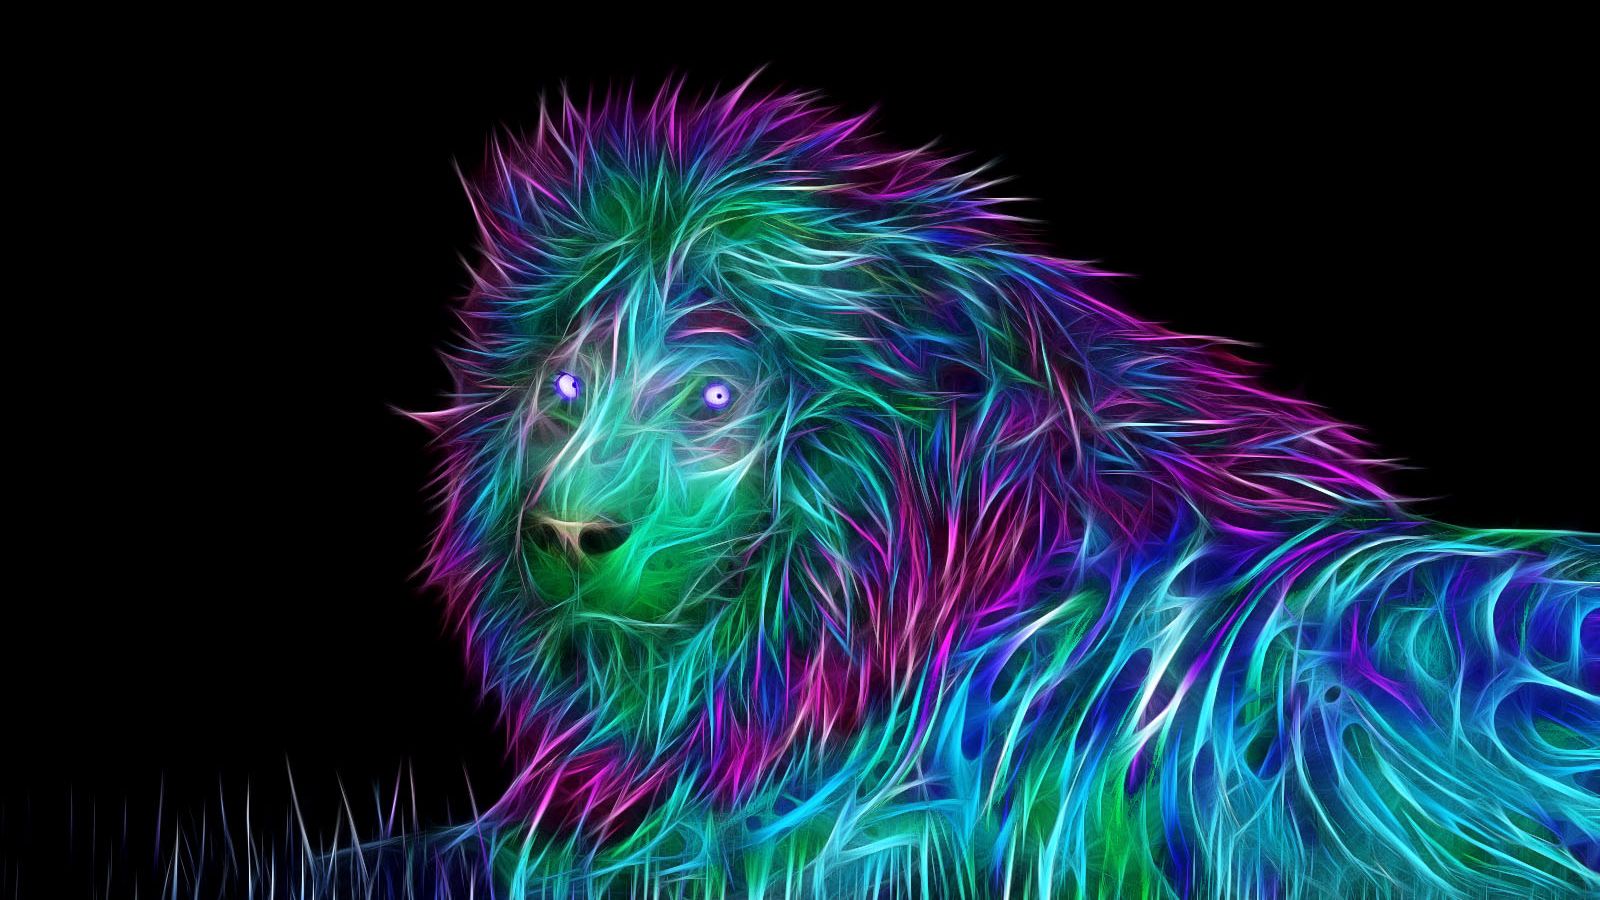 Abstract Lion Art Desktop Wallpapers